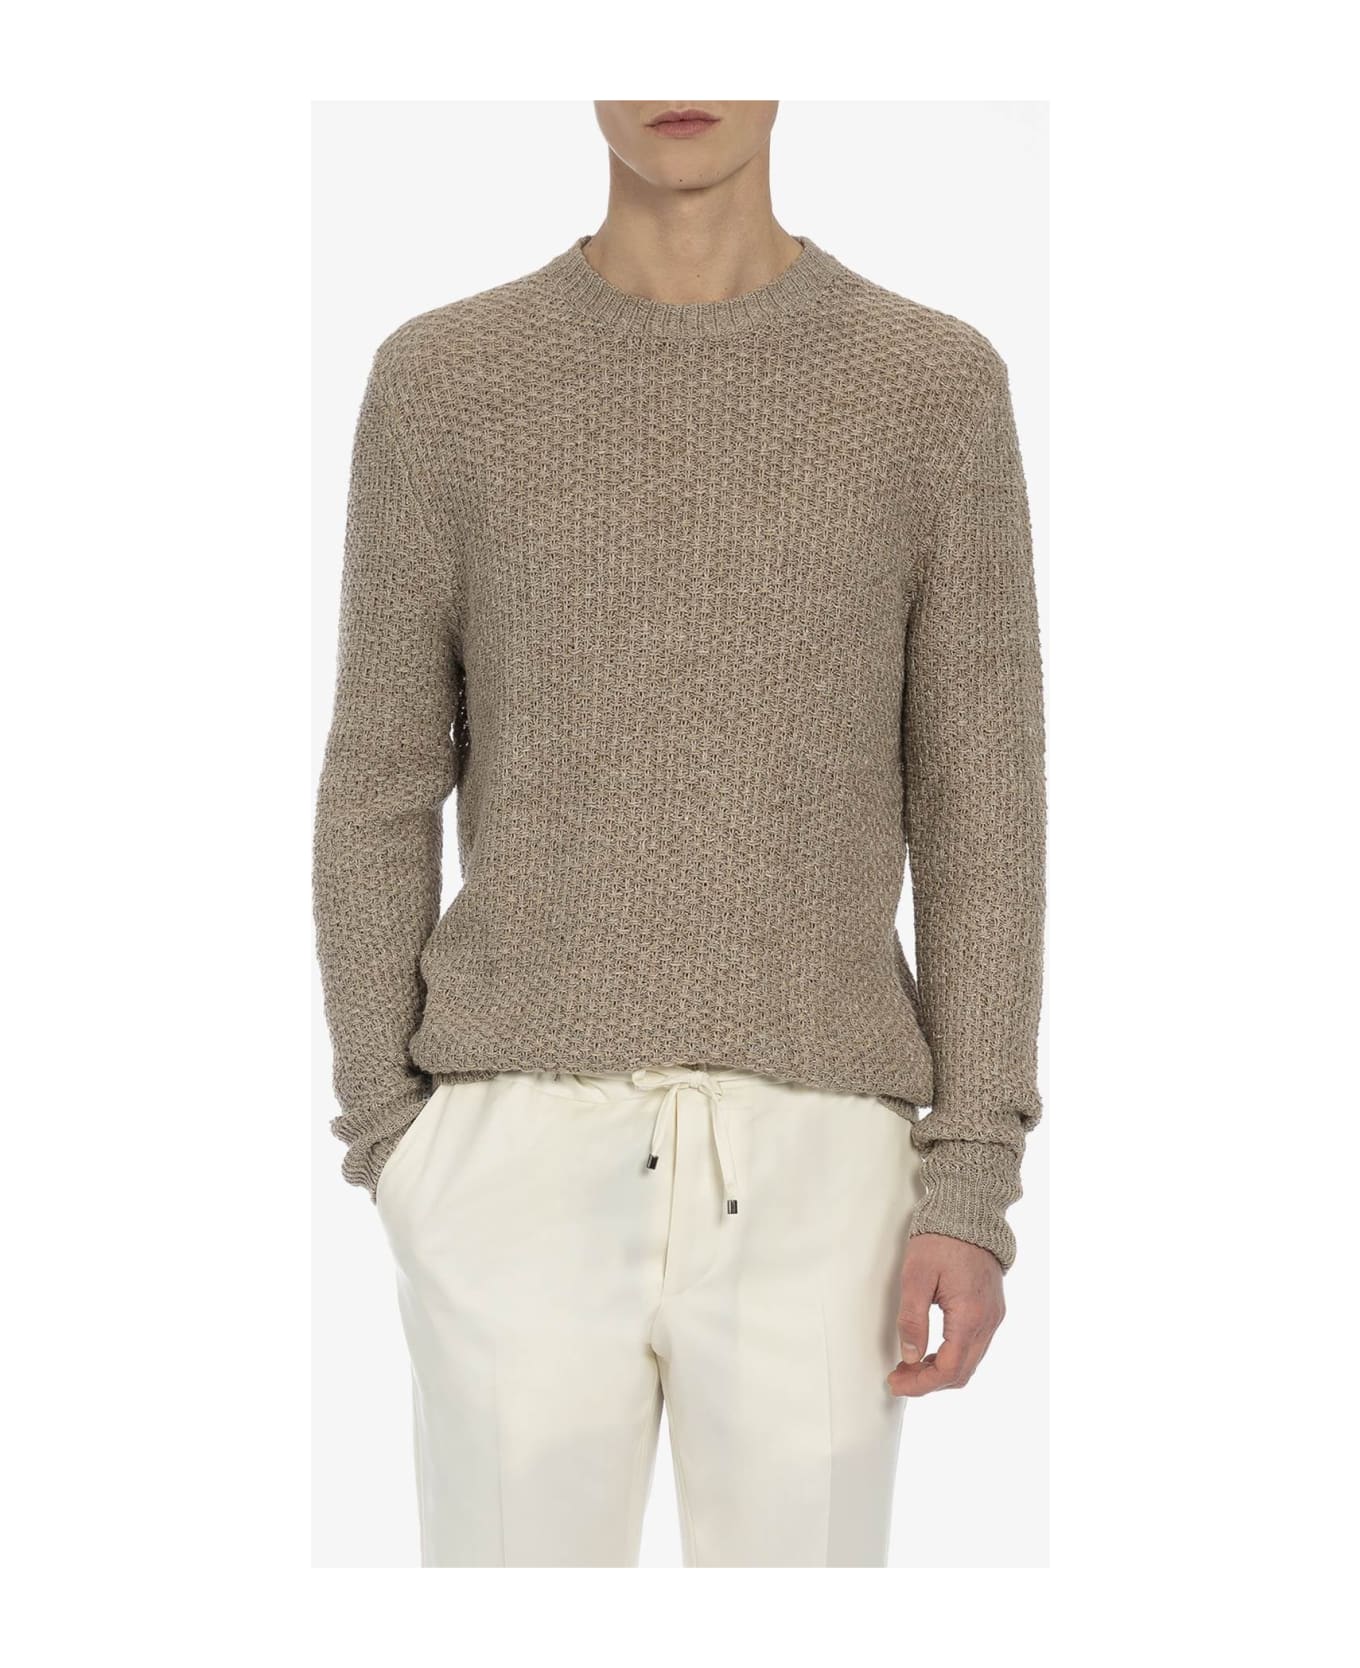 Larusmiani 'meadow Lane' Sweater Sweater - Beige ニットウェア